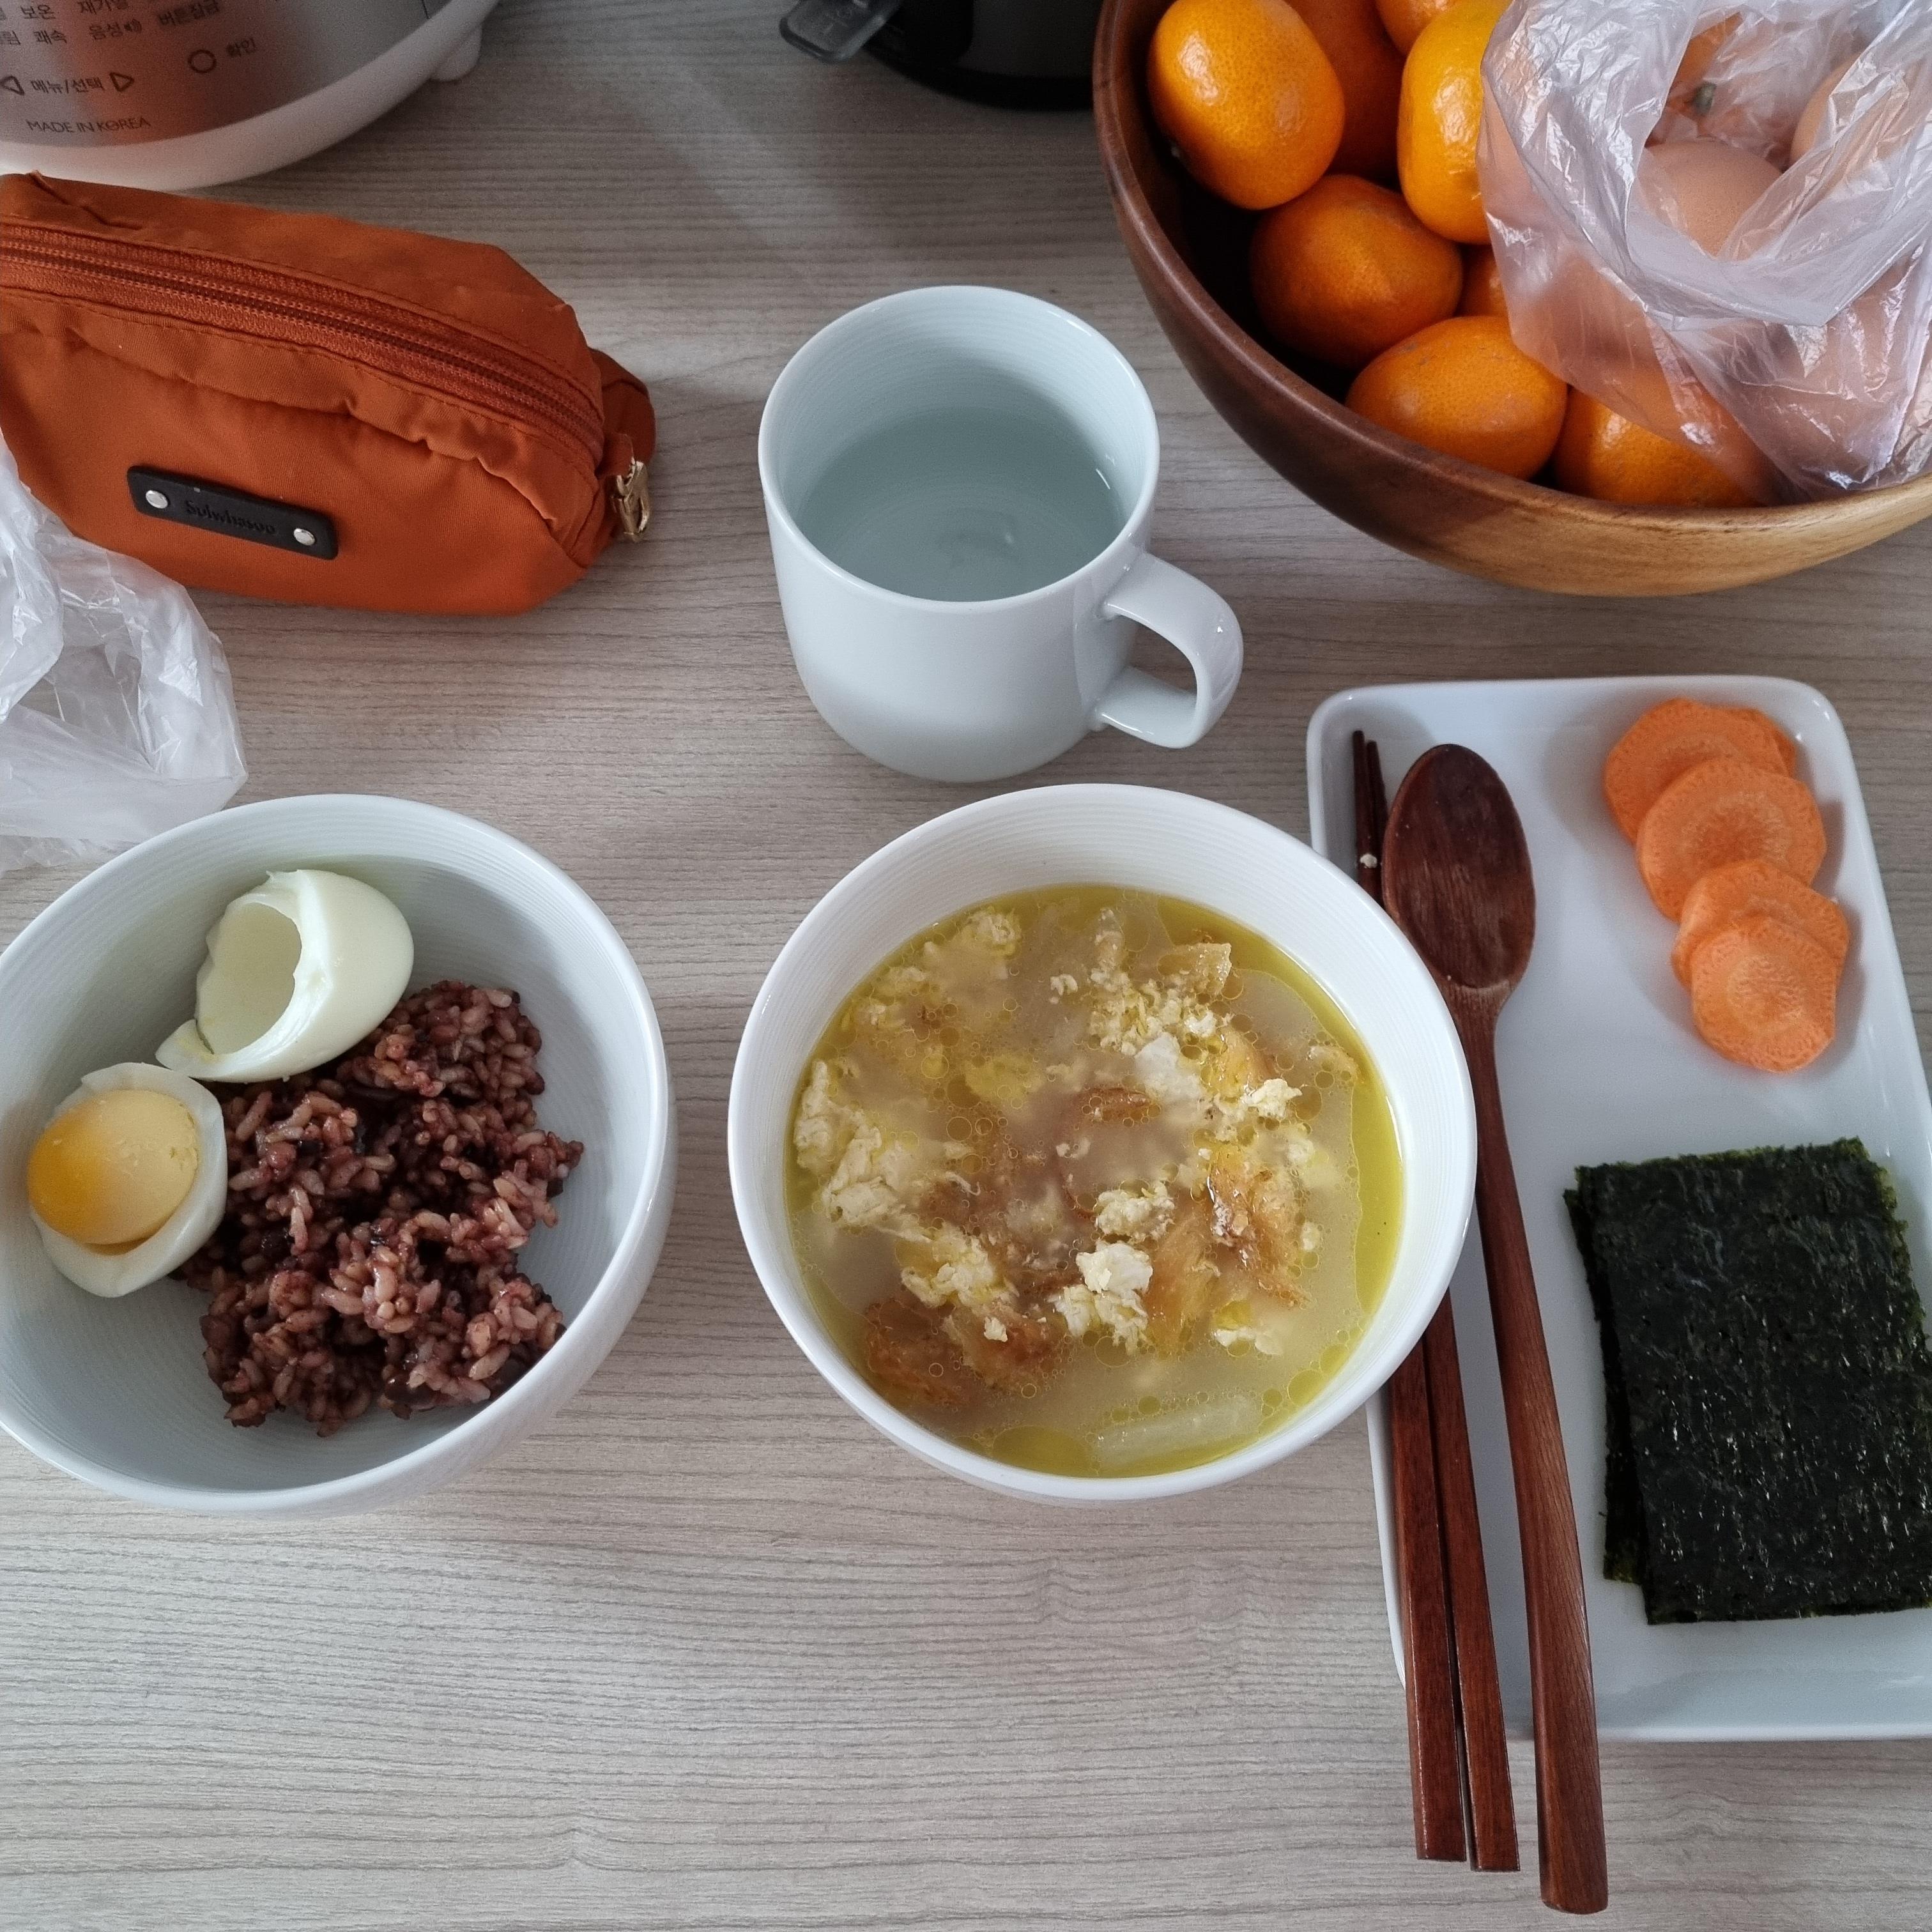 현미밥과 계란들, 황태와 김, 당근